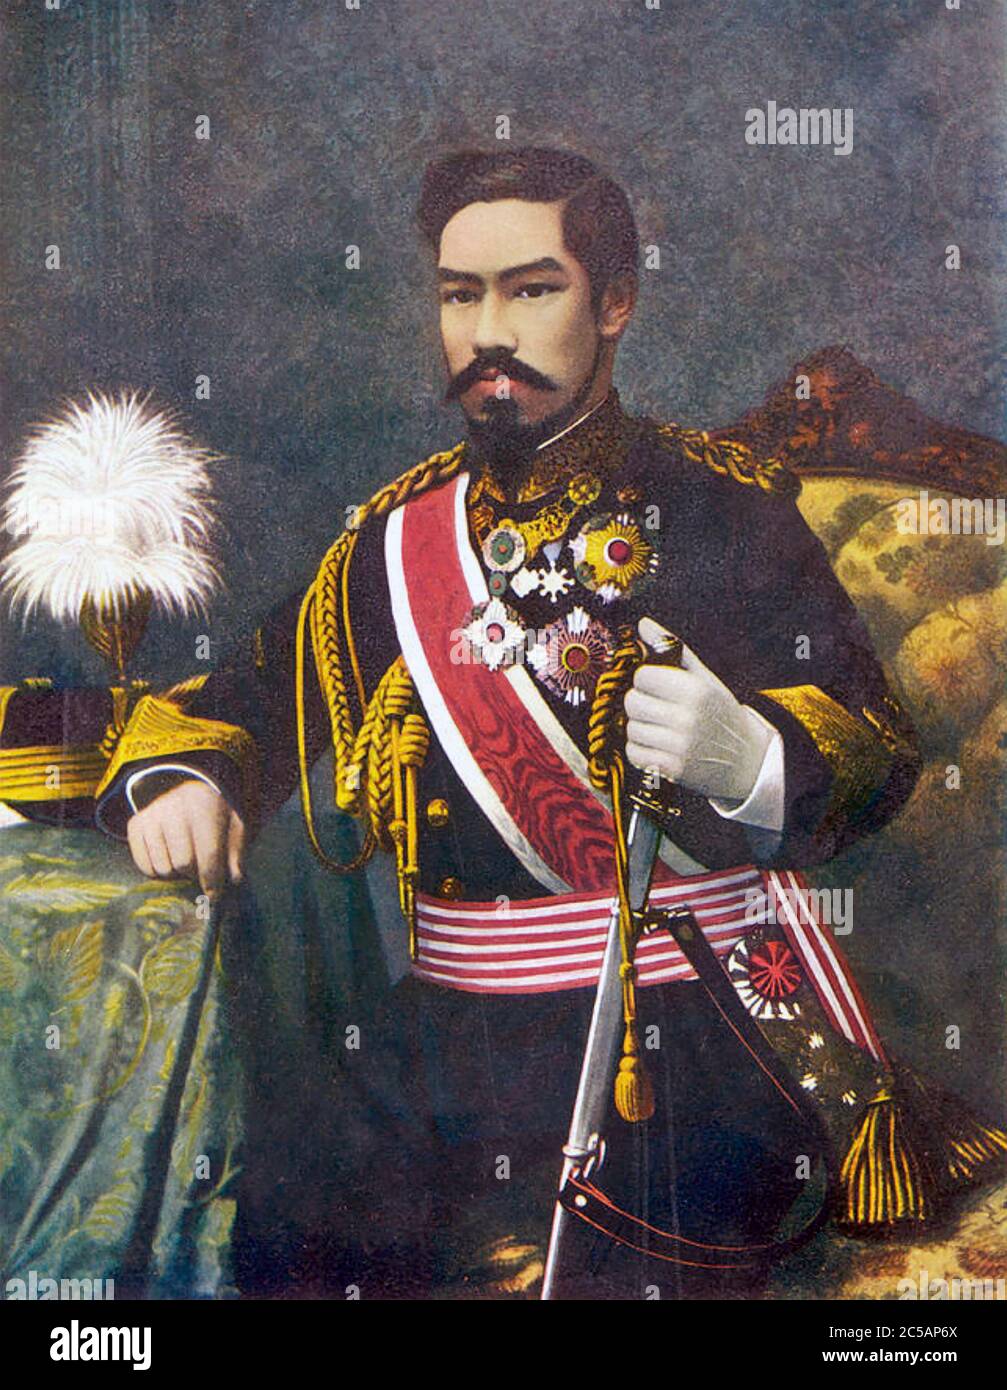 EMPEROR MEIJI OF JAPAN (1852-1912) in 1888 Stock Photo